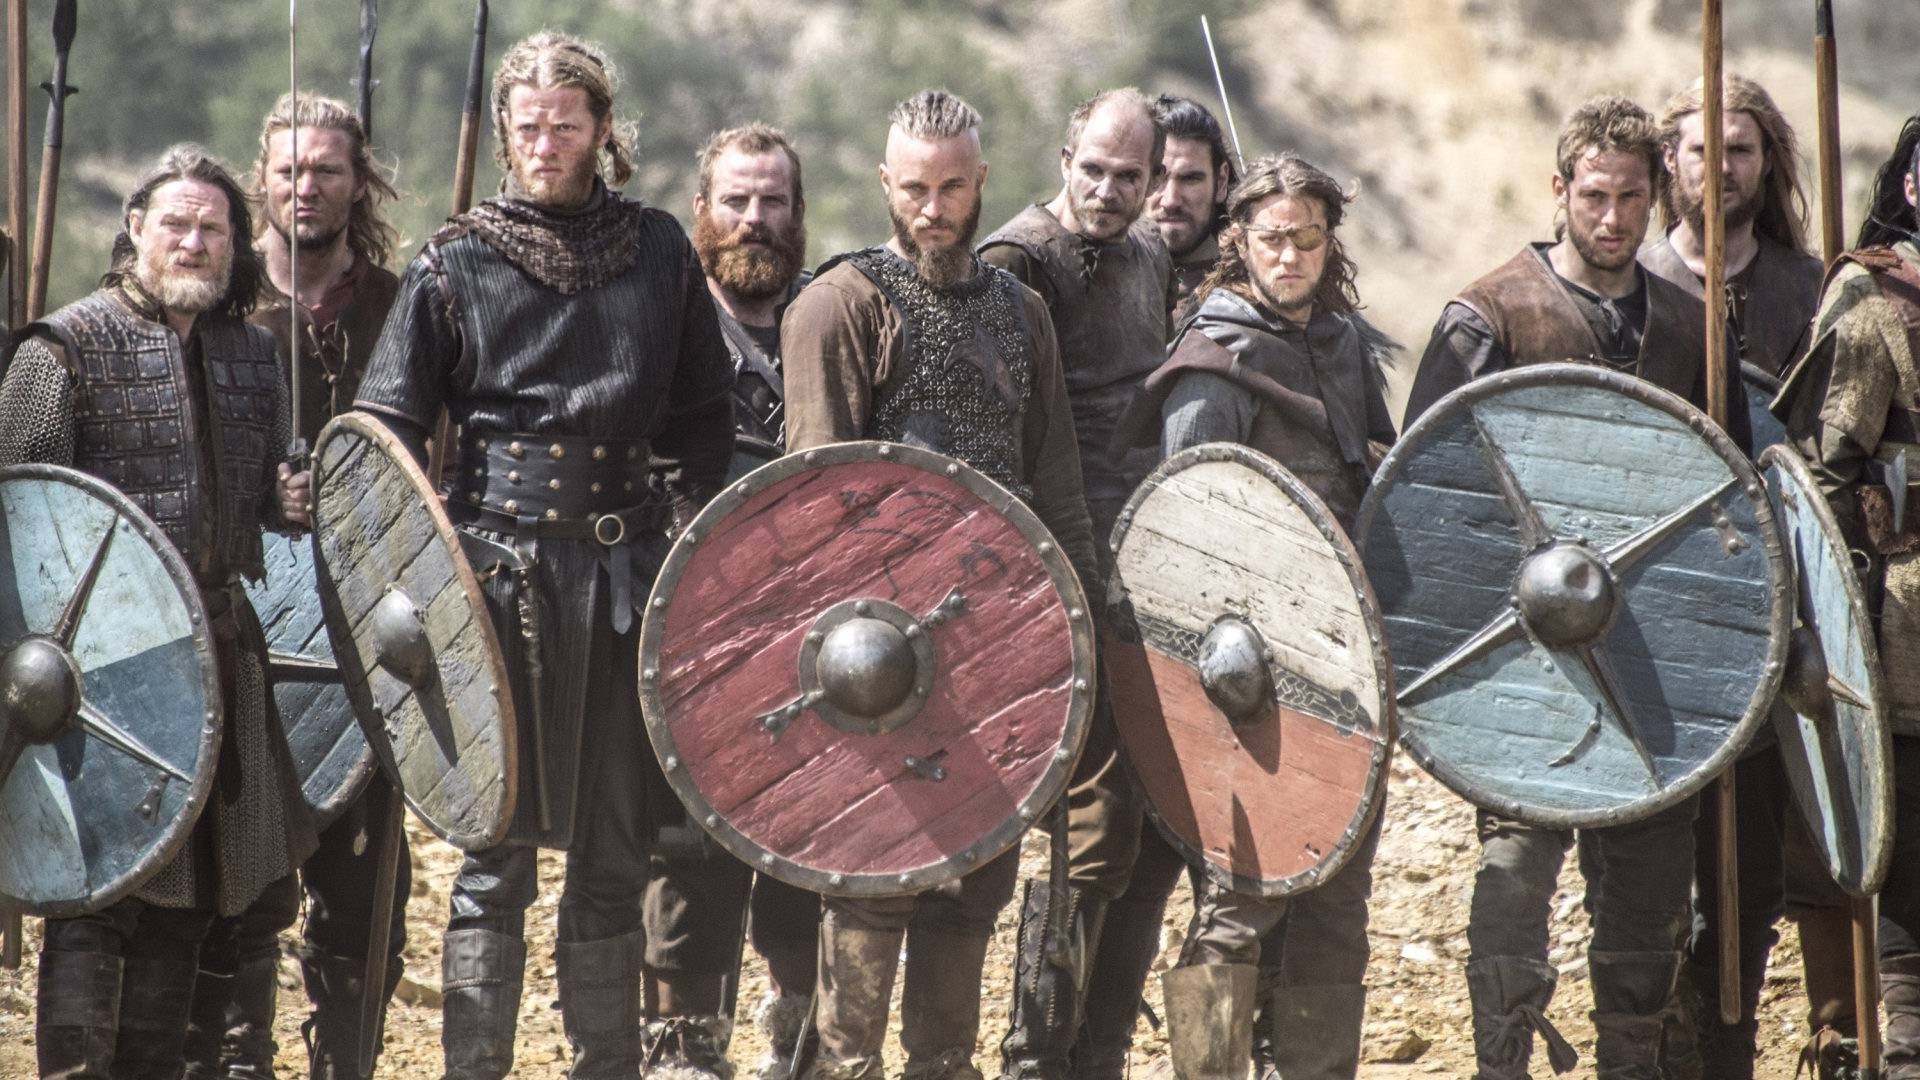 Vikings (TV Series) Wallpaper